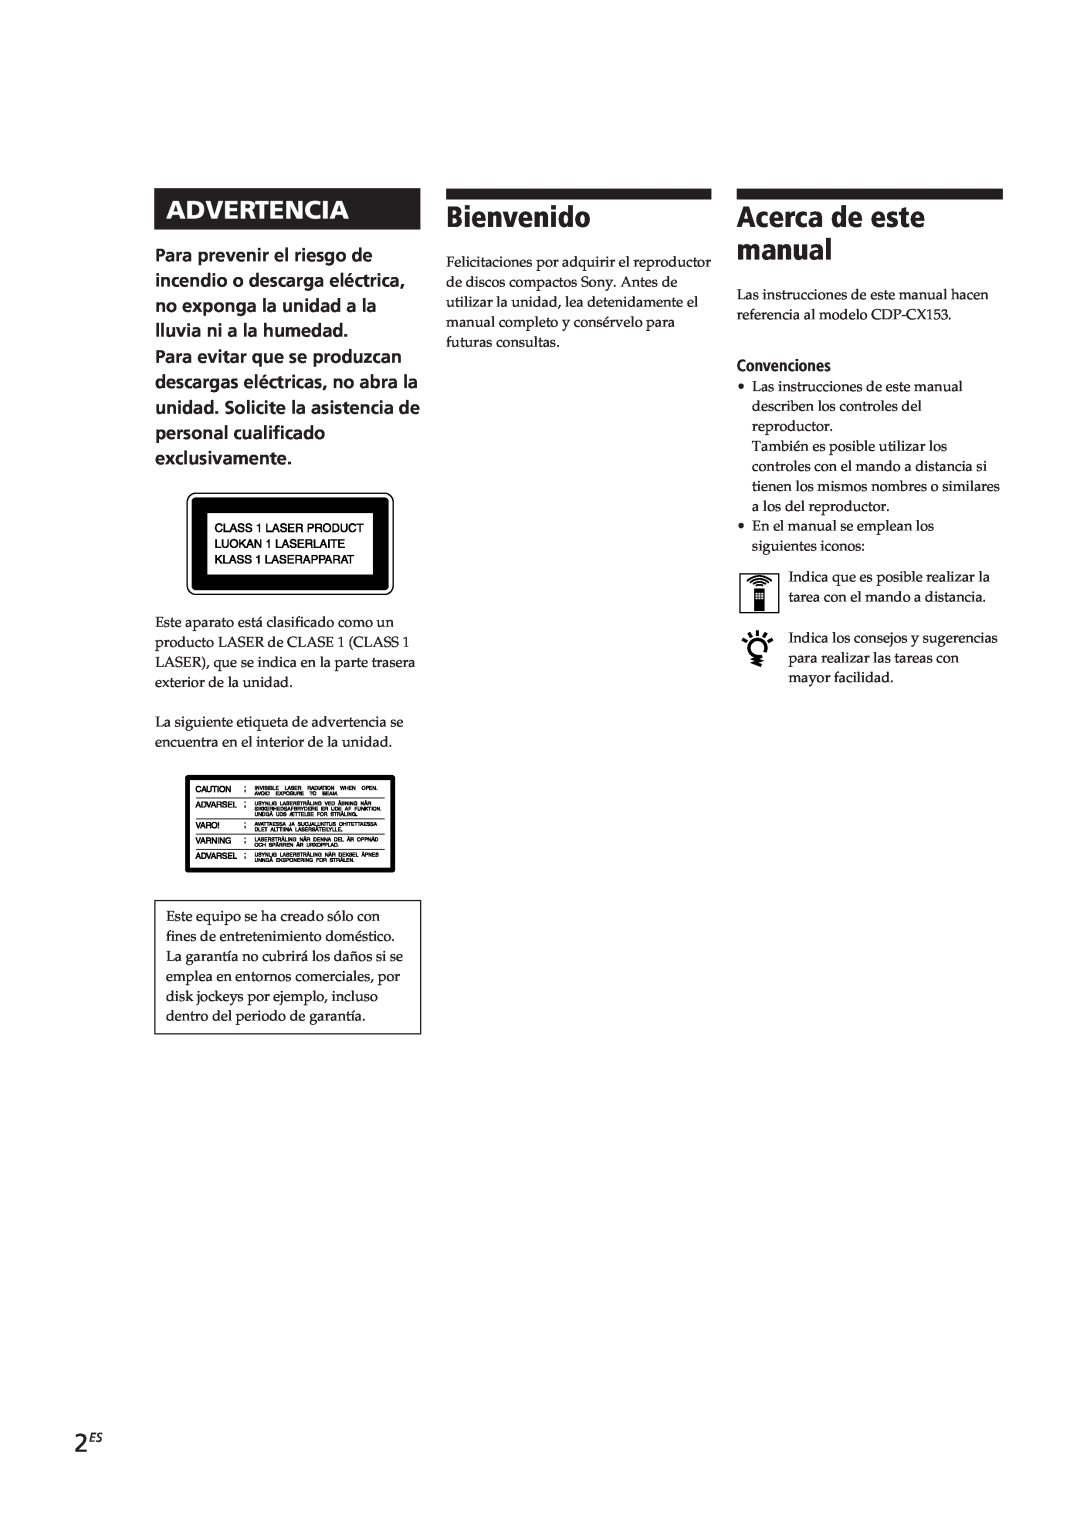 Sony CDP-CX153 Bienvenido, Acerca de este manual, Advertencia, Convenciones 